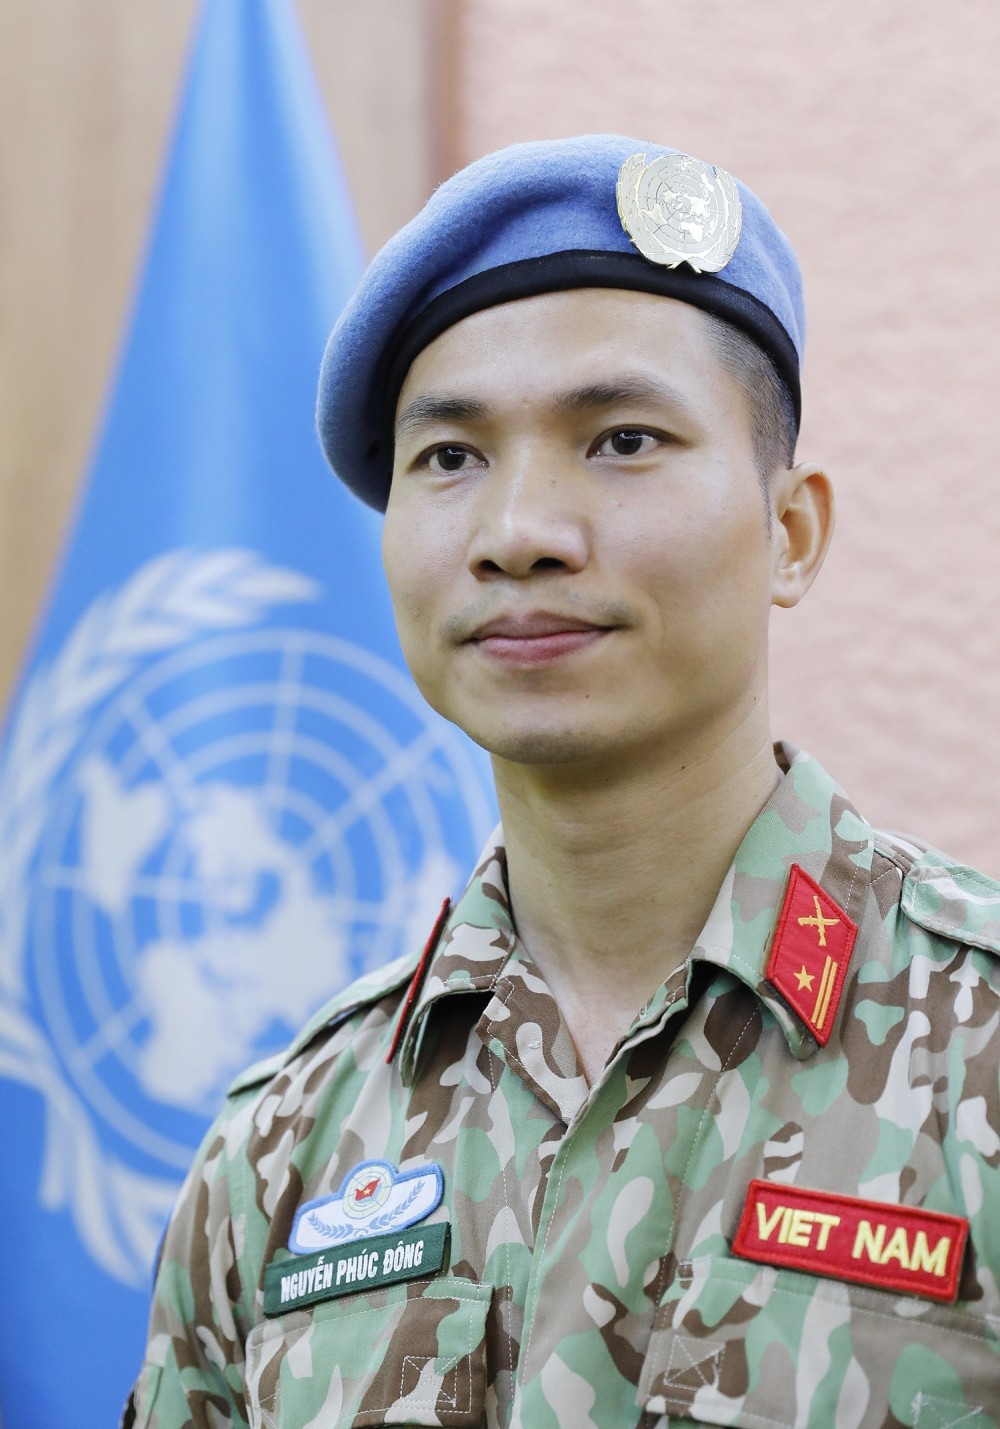 Thiếu tá Nguyễn Phúc Đông thực hiện nhiệm vụ Sĩ quan huấn luyện tại Trụ sở Liên hợp quốc, New York. (Nguồn: TTXVN)